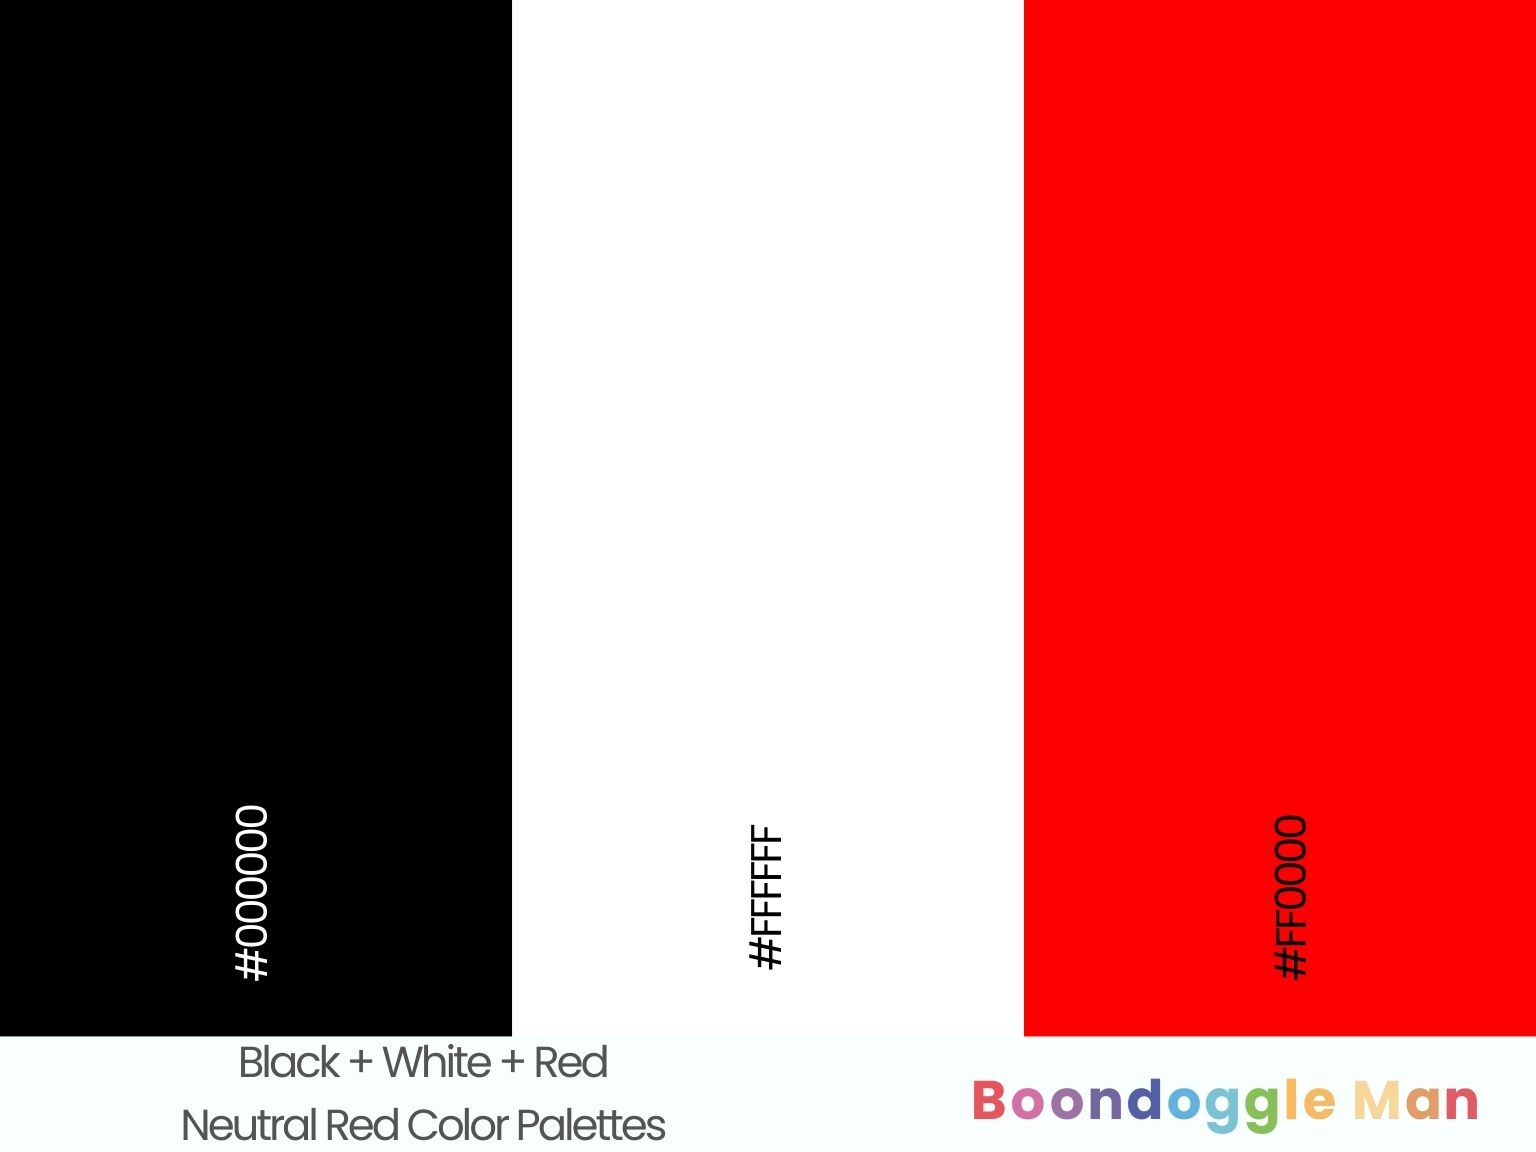 Black + White + Red